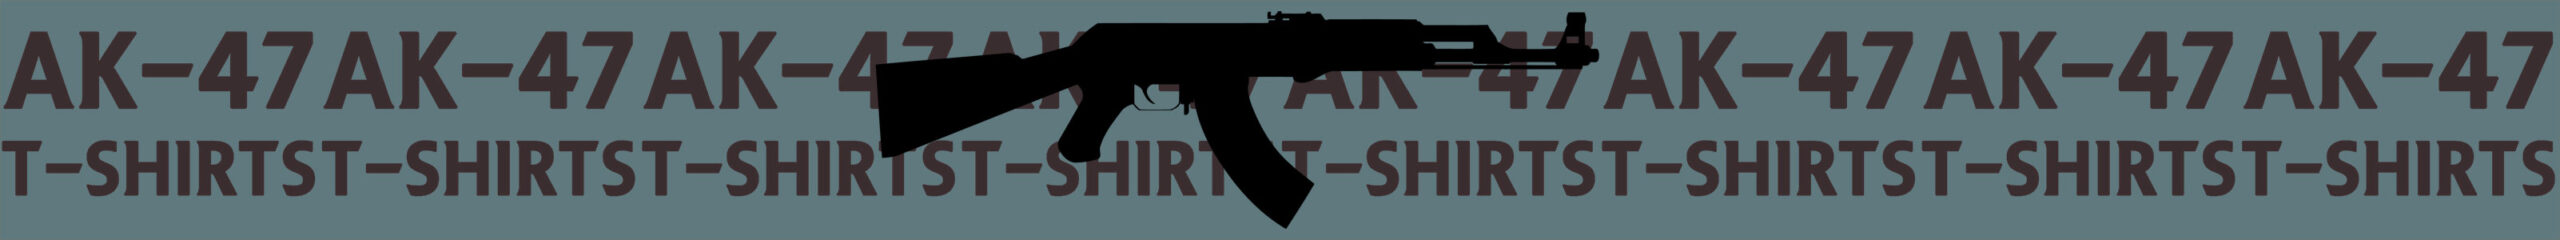 AK47 T-Shirt Range